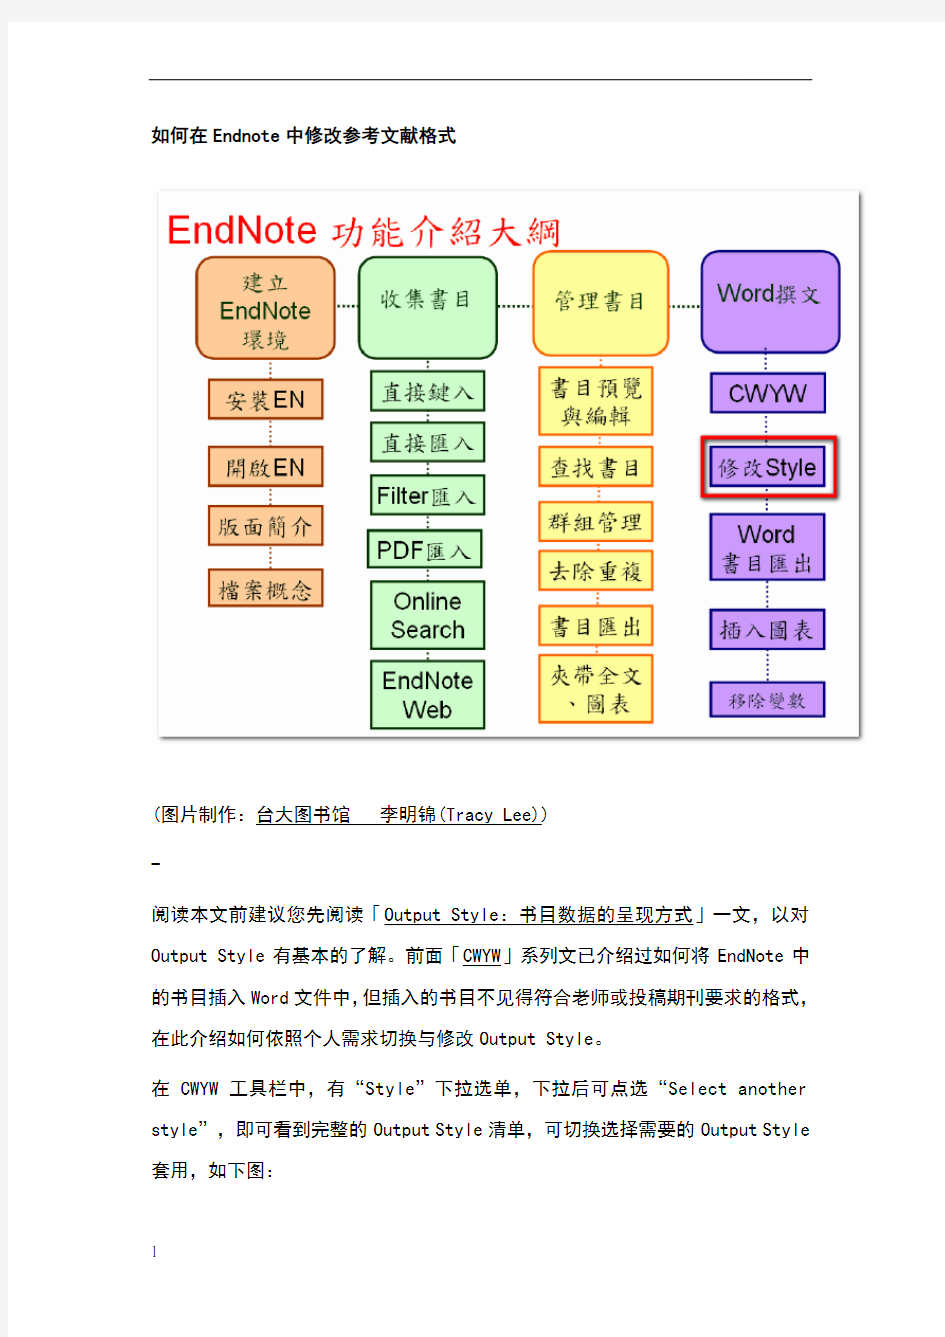 在Endnote中修改参考文献格式的方法